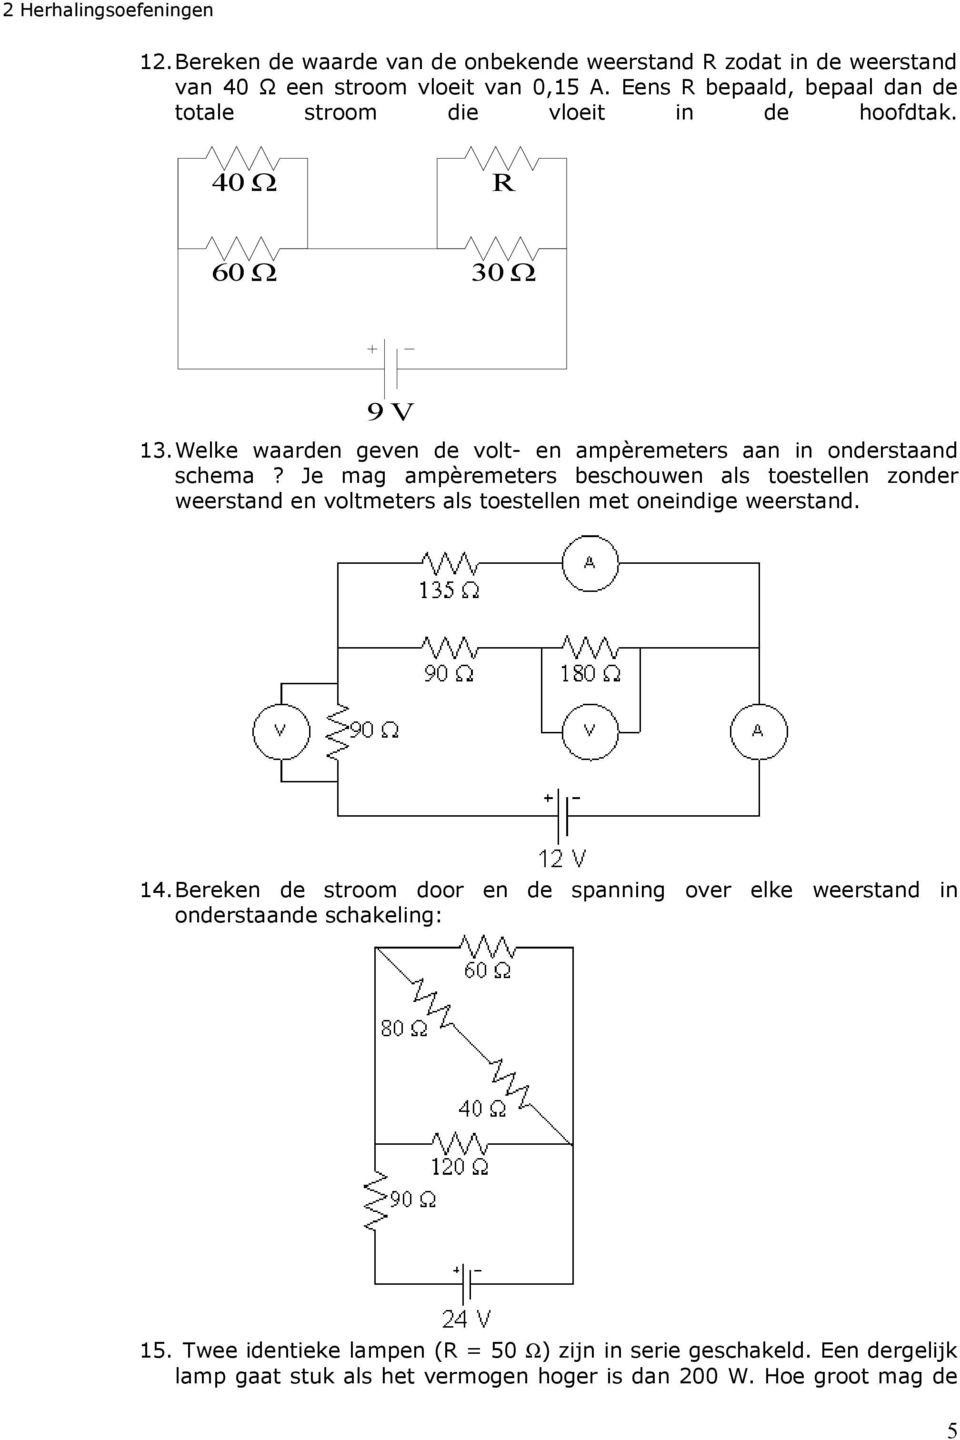 Welke waarden geven de volt- en ampèremeters aan in onderstaand schema?